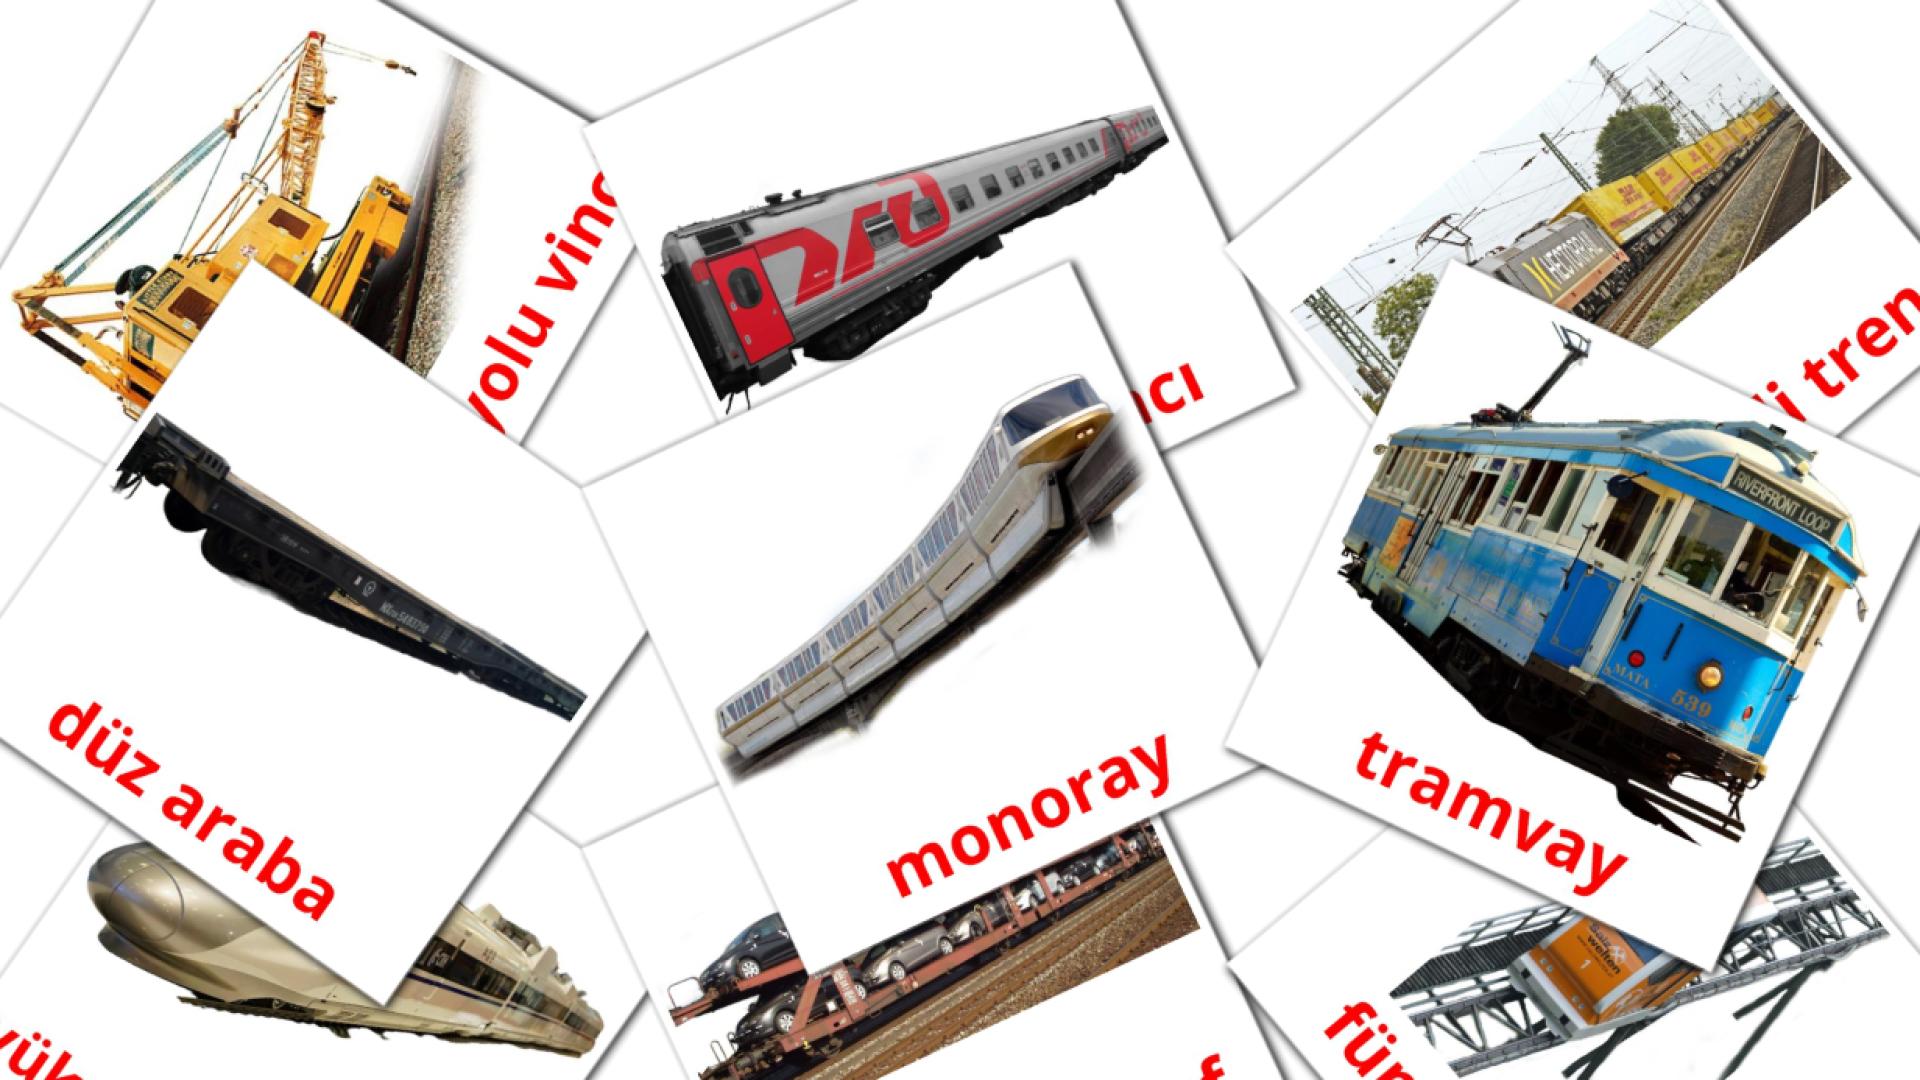 18 demiryolu taşımacılığı flashcards